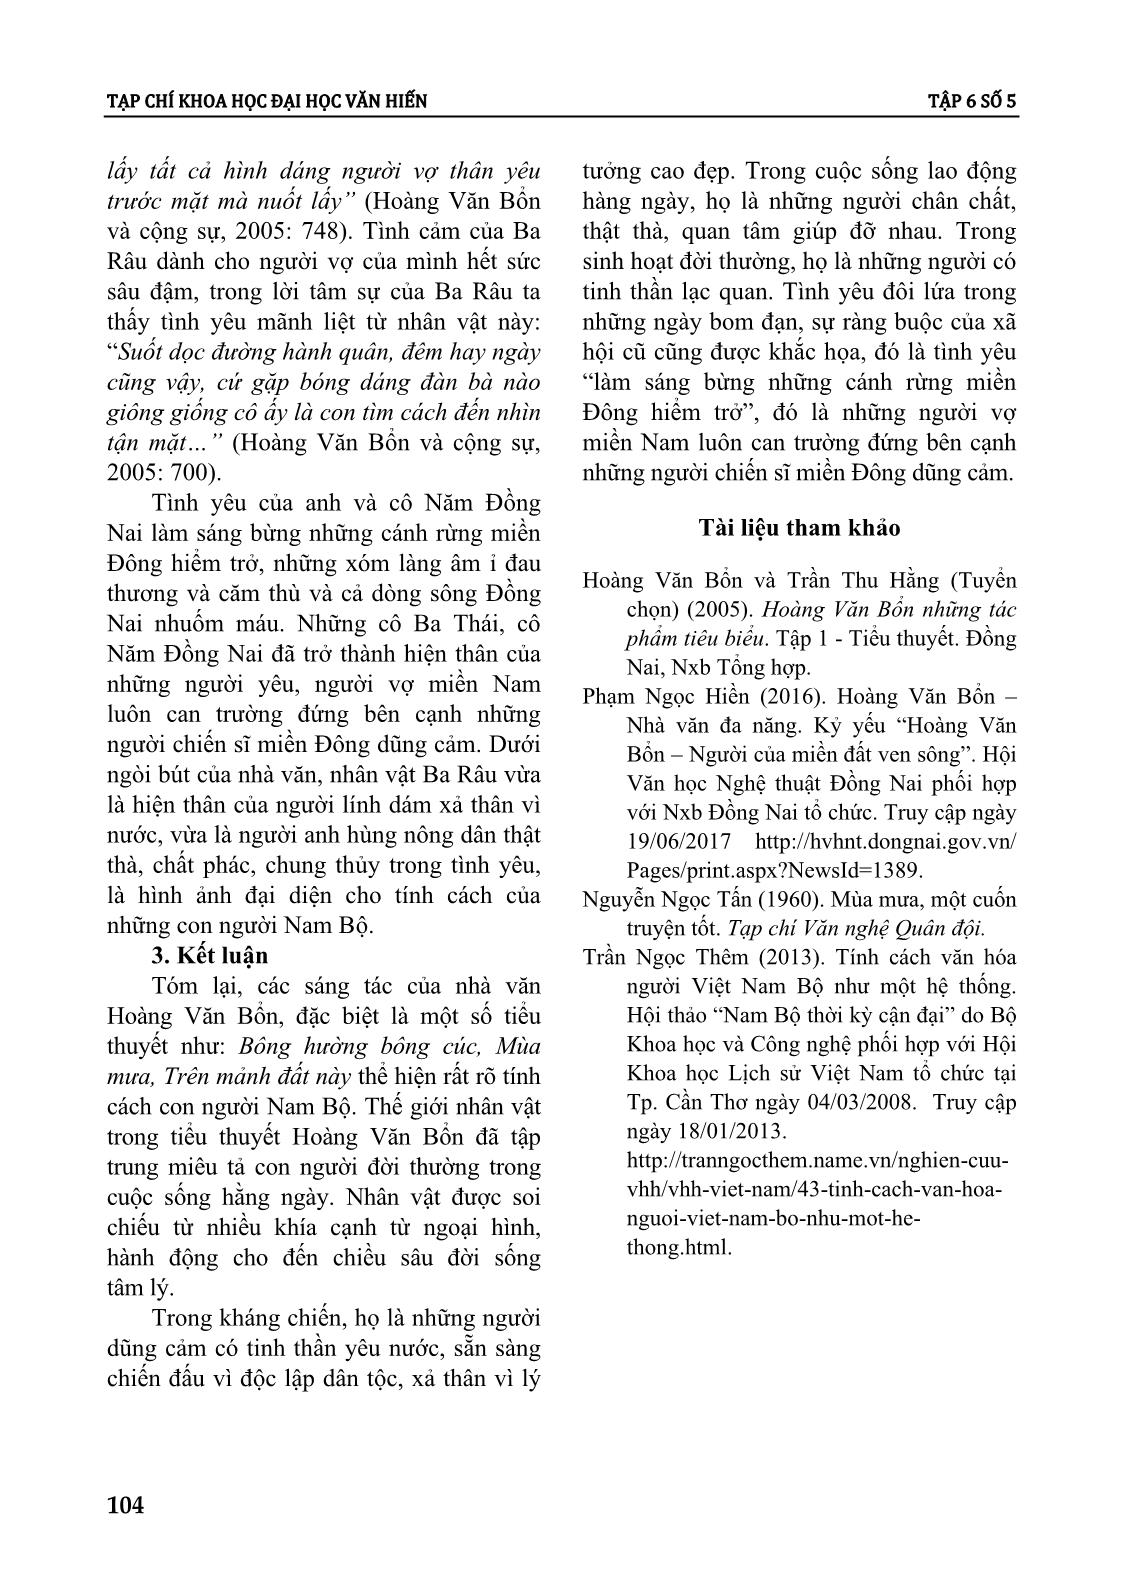 Tính cách con người nam bộ trong tiểu thuyết Hoàng Văn Bổn giai đoạn 1955 - 1975 trang 8